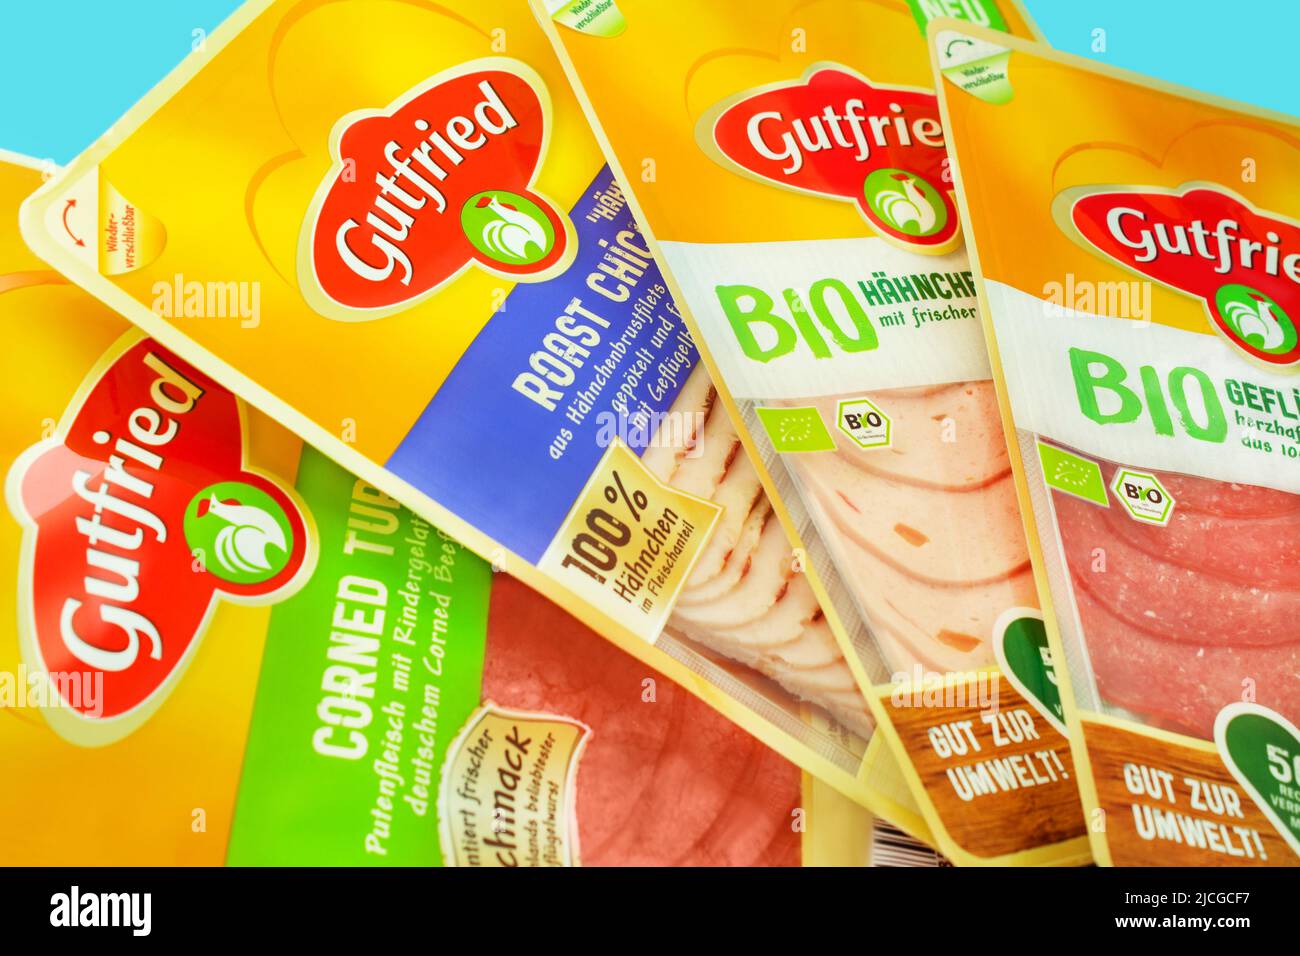 Deutsche Produkte von Gutfried  Wurstsorten und Verpackung mit Bio EU-Siegel Stock Photo